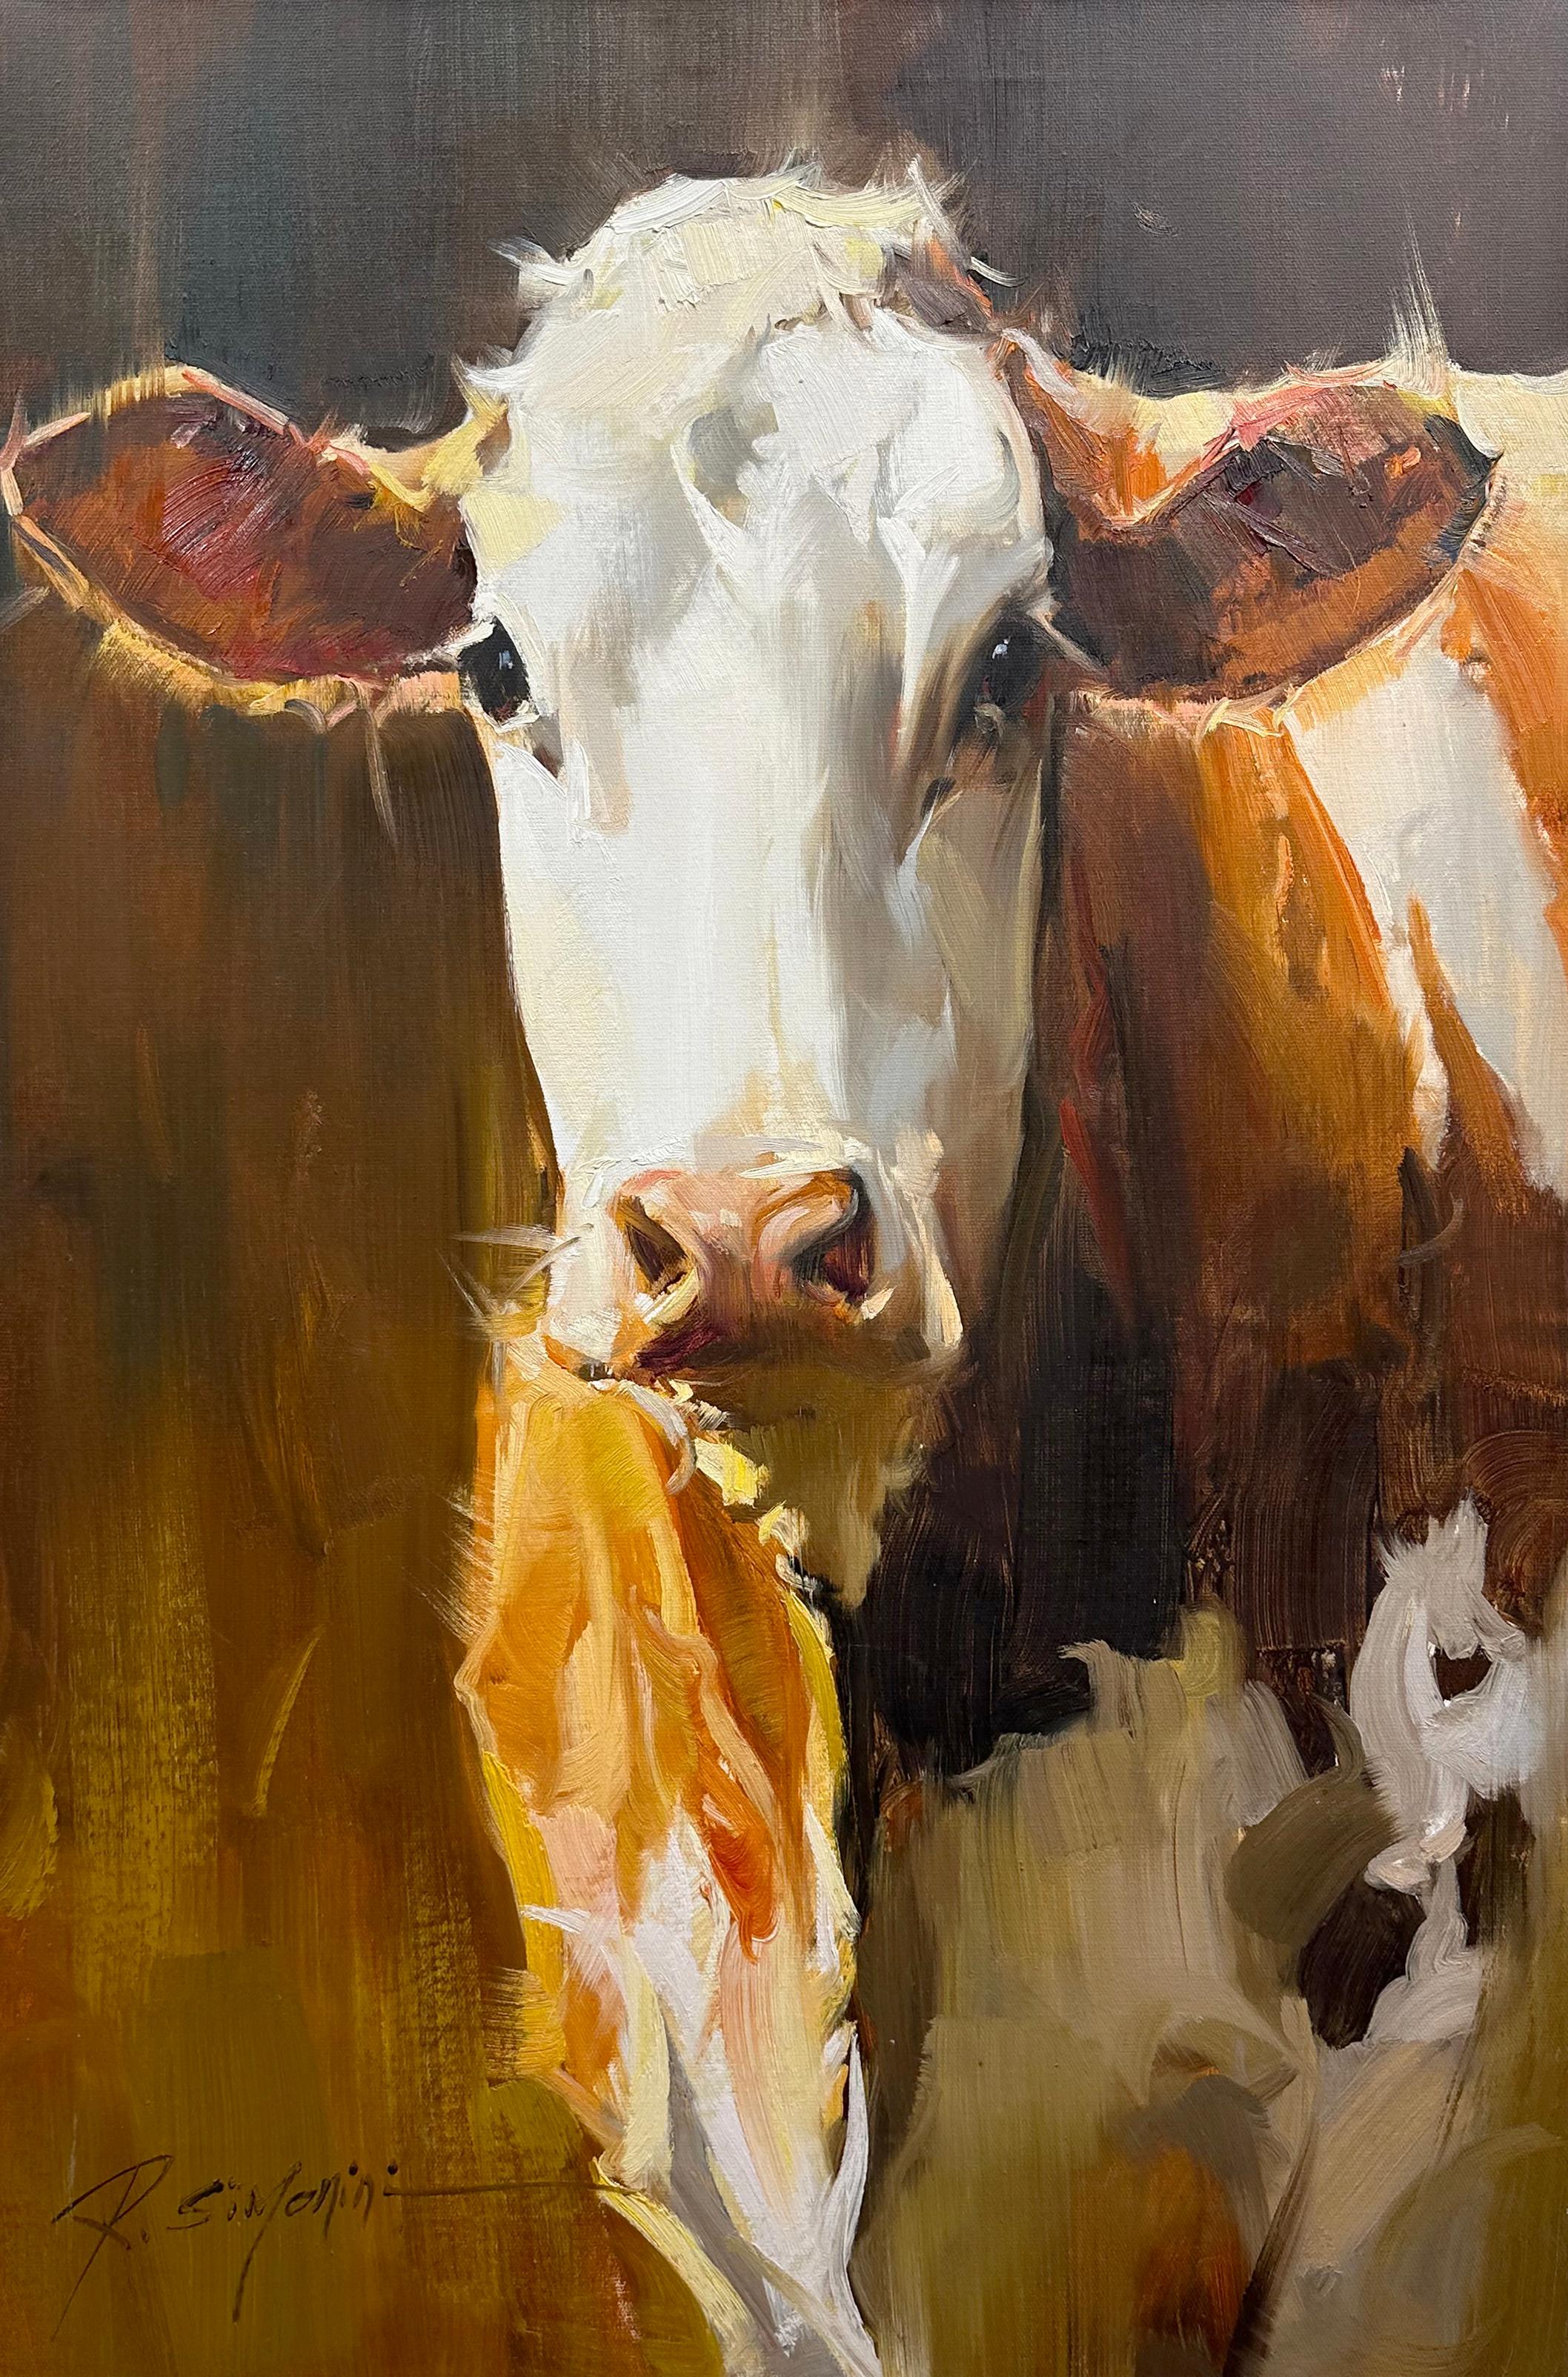 Cette peinture de l'artiste Ray Simonini intitulée "Savannah" est une peinture à l'huile sur toile de 36x24 représentant une vache tachetée brune et blanche sur un fond sombre. 

A propos de l'artiste :
SIMONINI est né en Chine en 1981. Il est